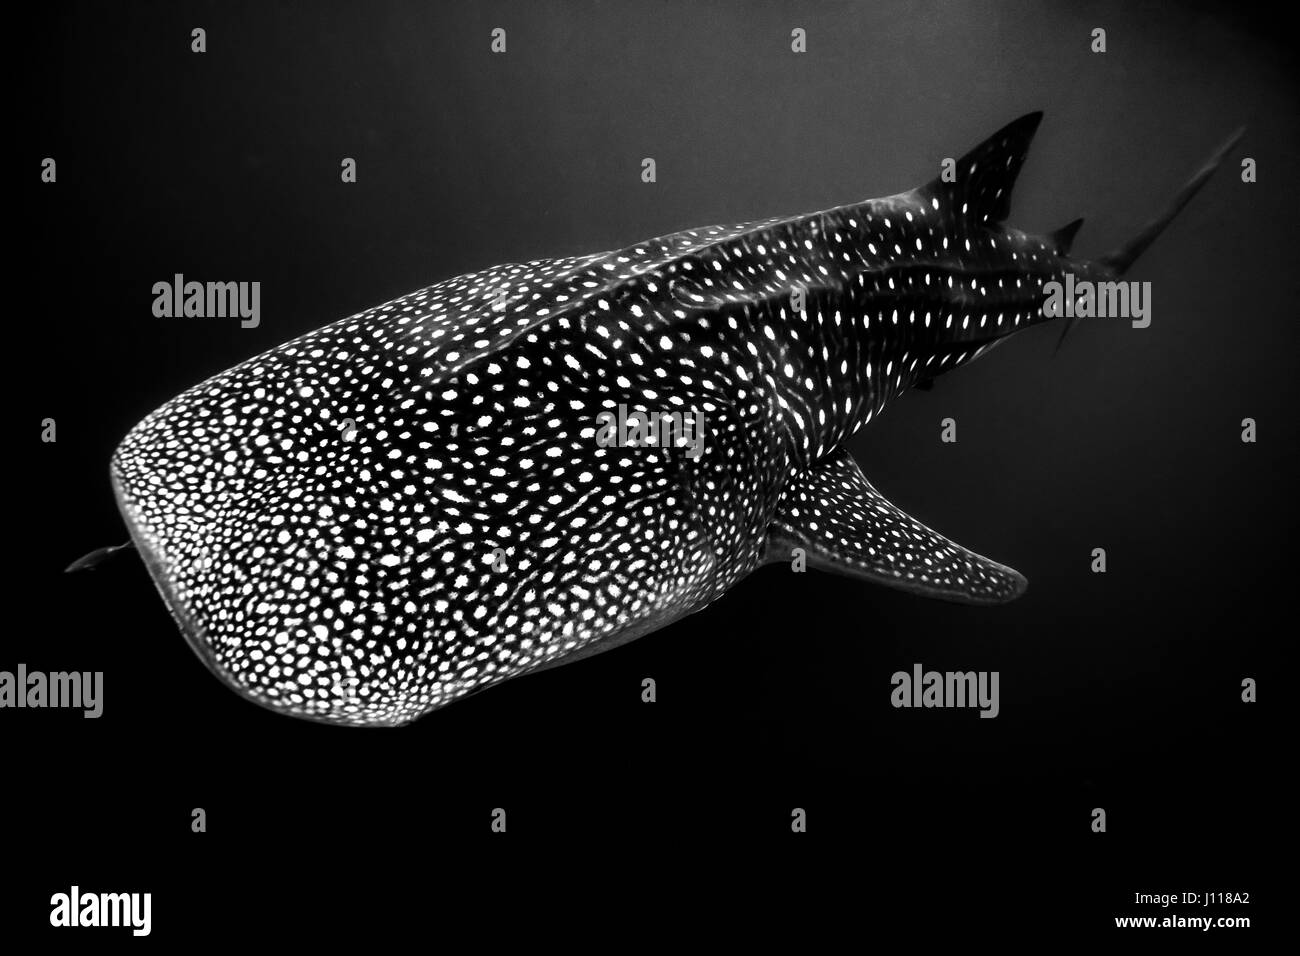 Porträt von einem Walhai, Exmouth, Western Australia, Australien Stockfoto